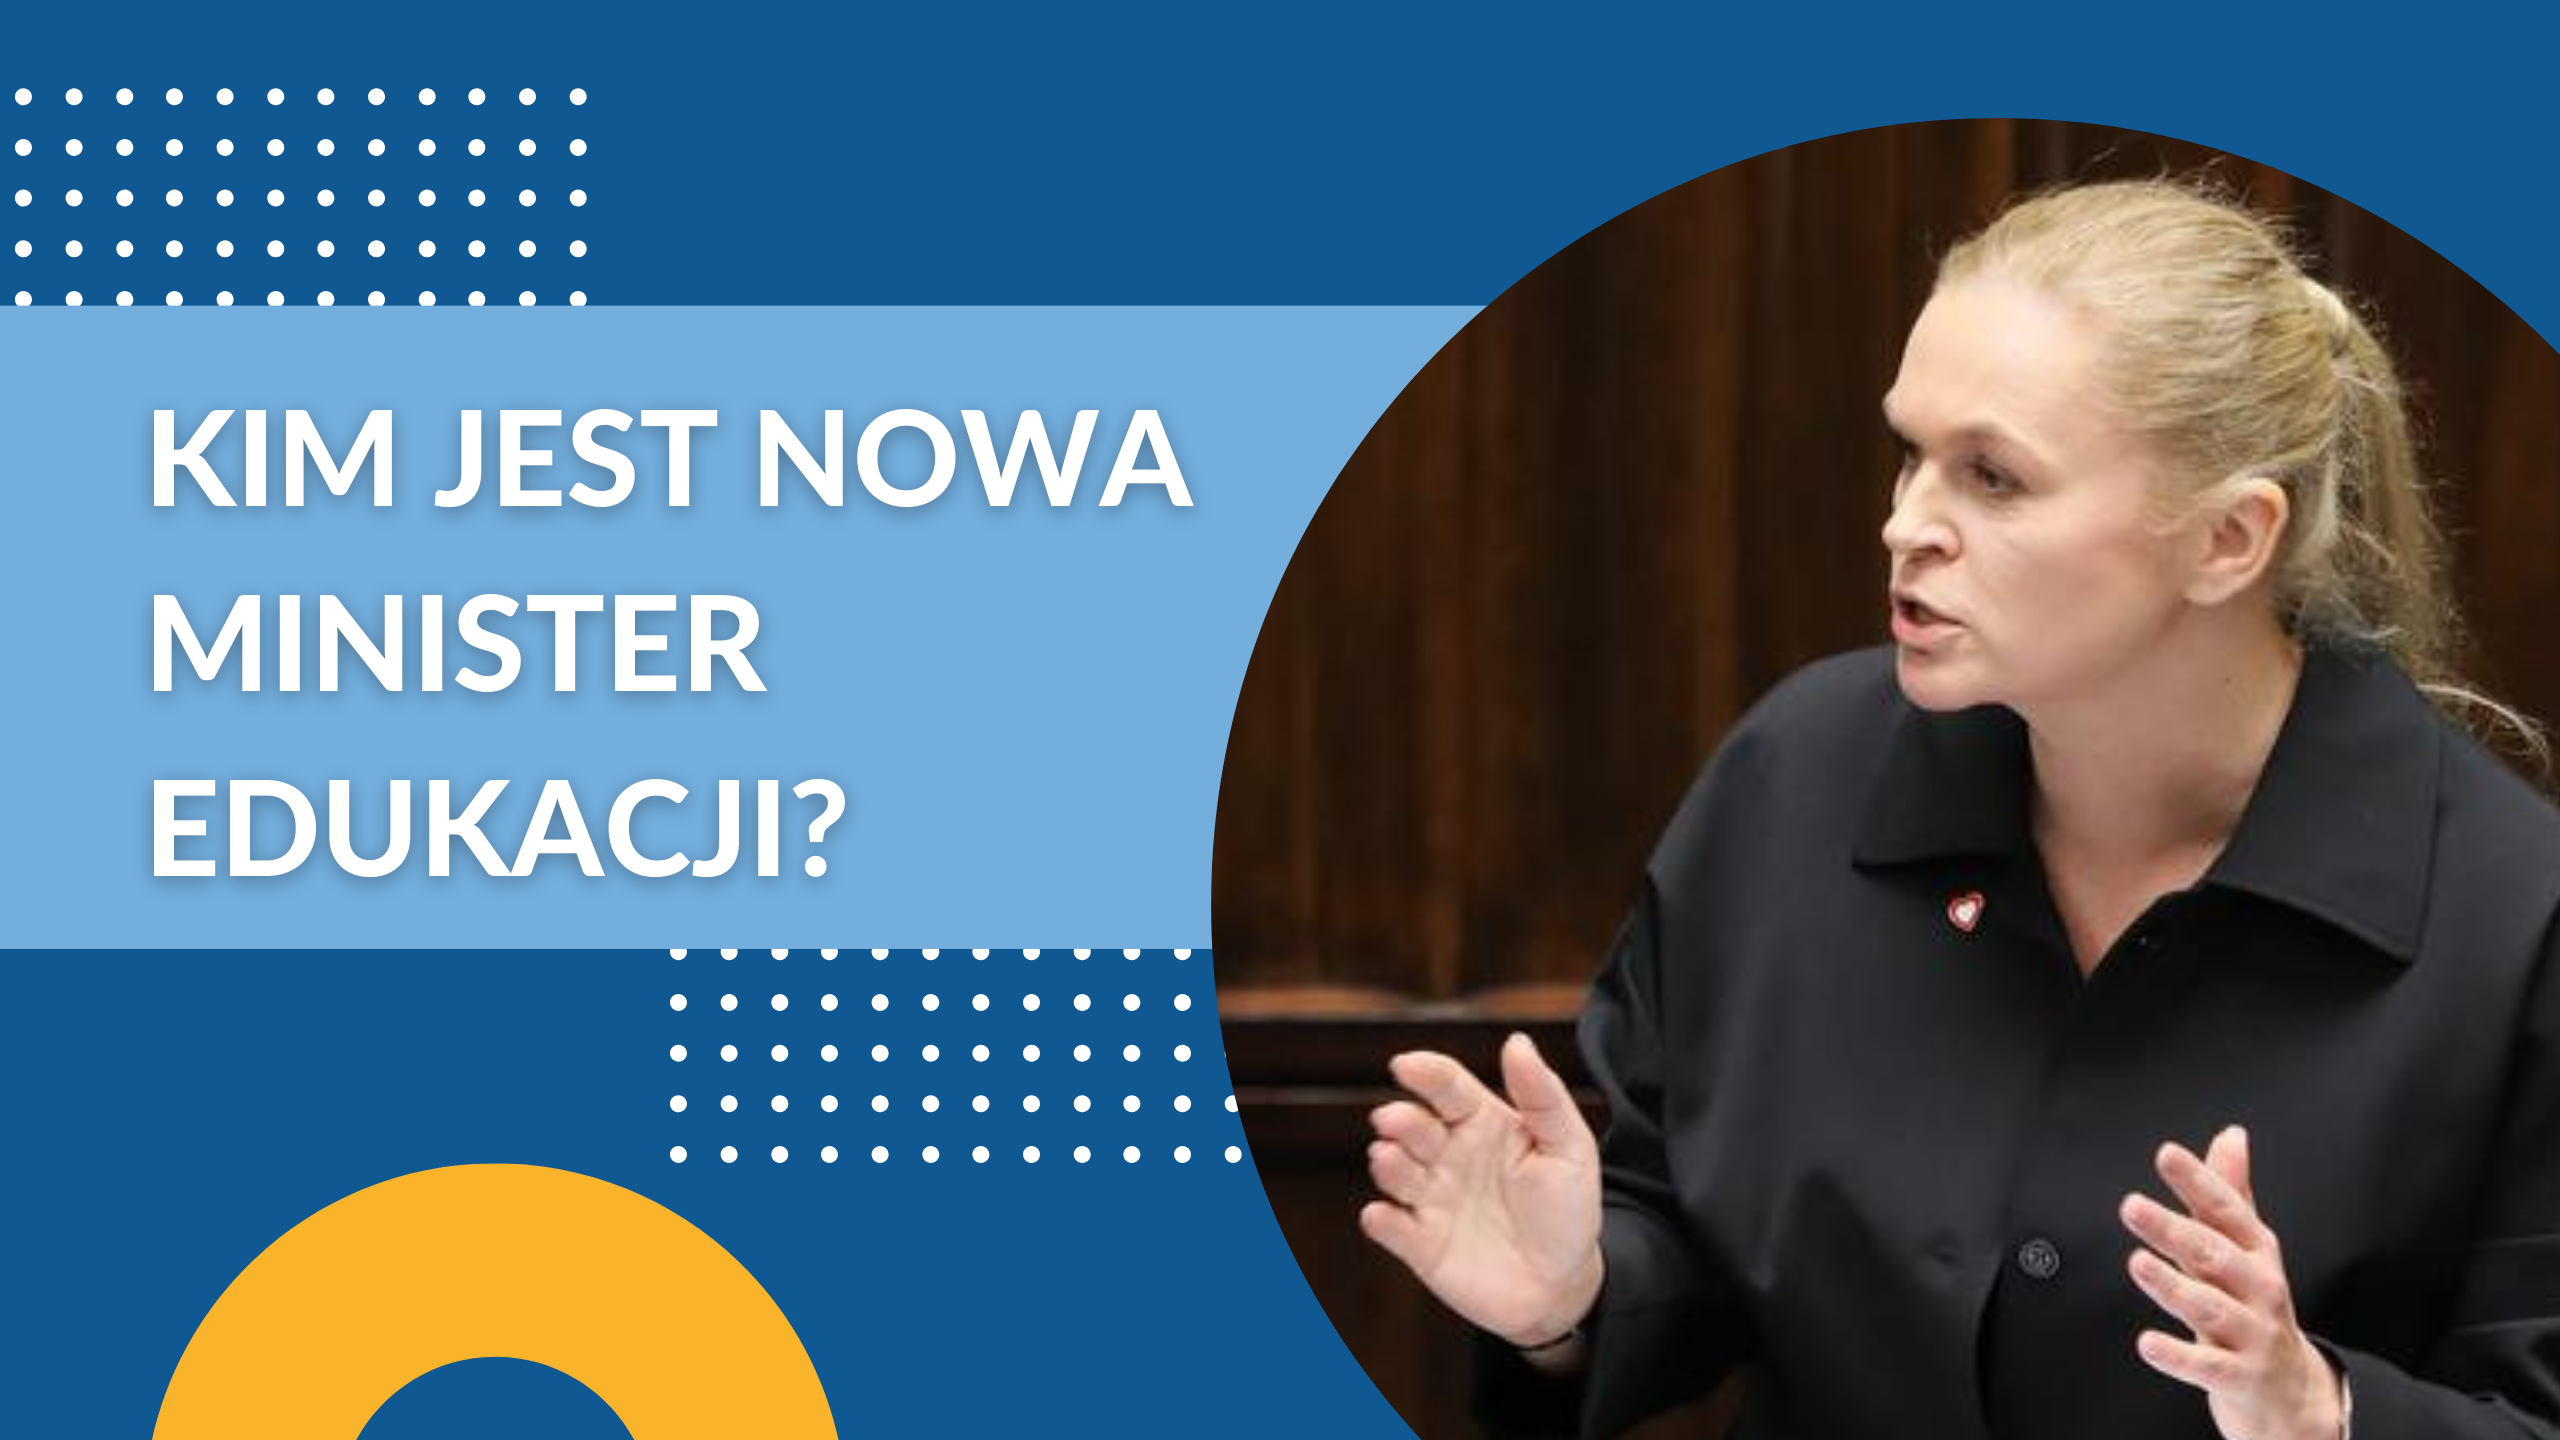 Kim jest nowa Minister Edukacji Barbara Nowacka?